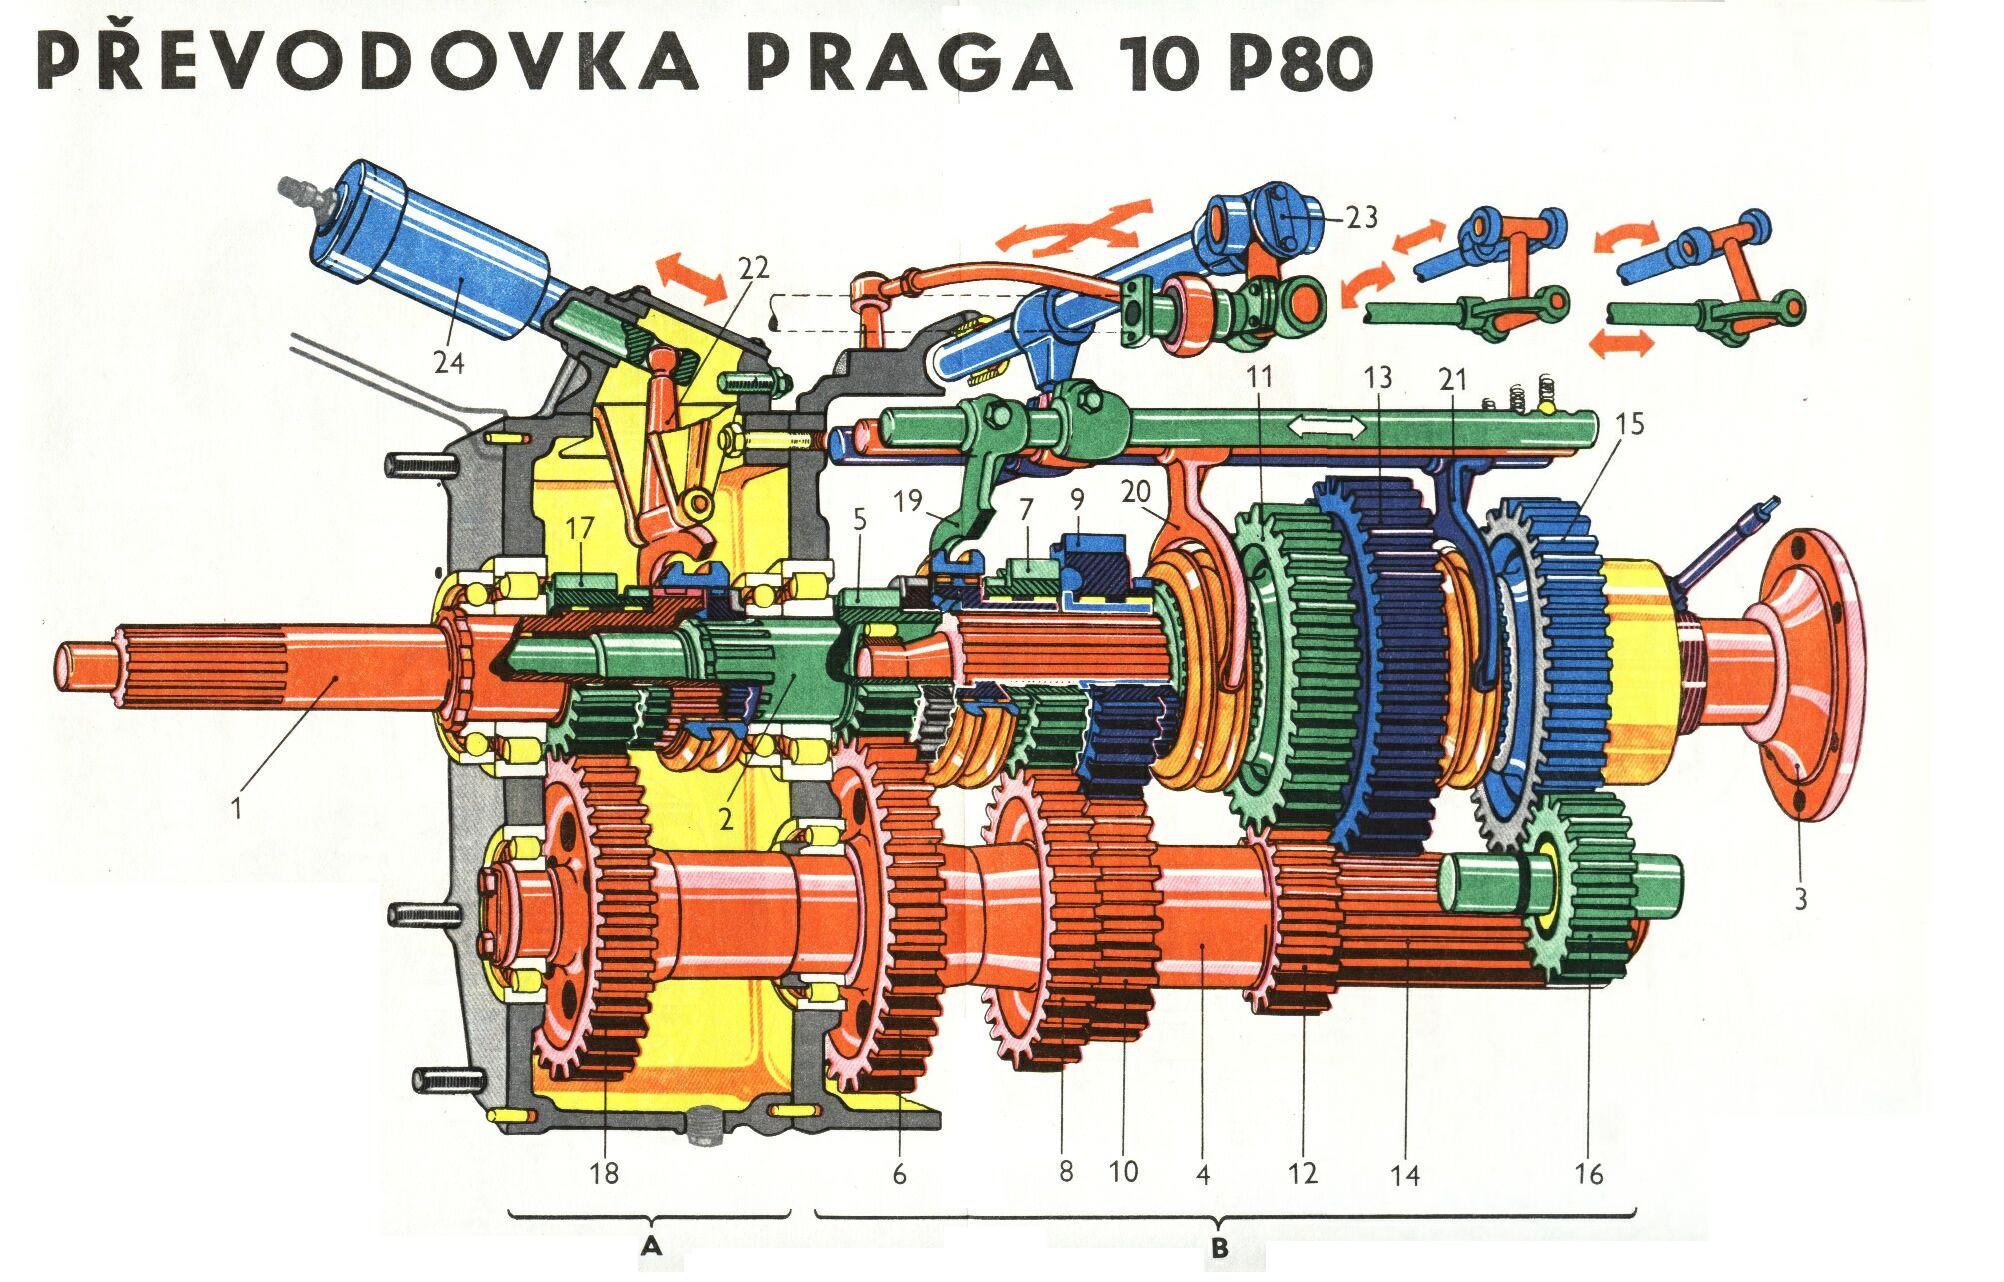 Převodovka Praga 10 P80 